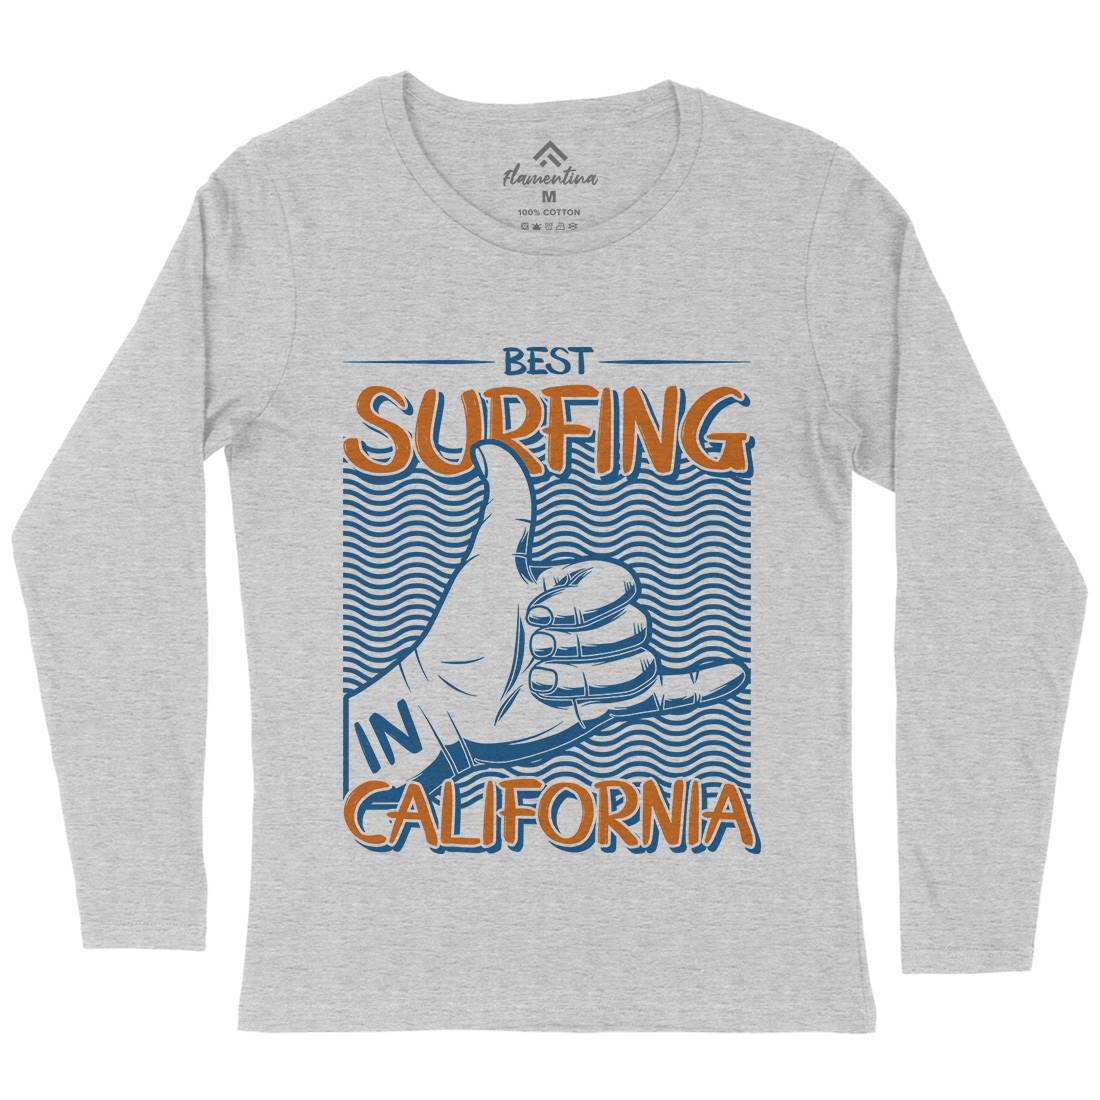 Best Surfing Womens Long Sleeve T-Shirt Surf D908